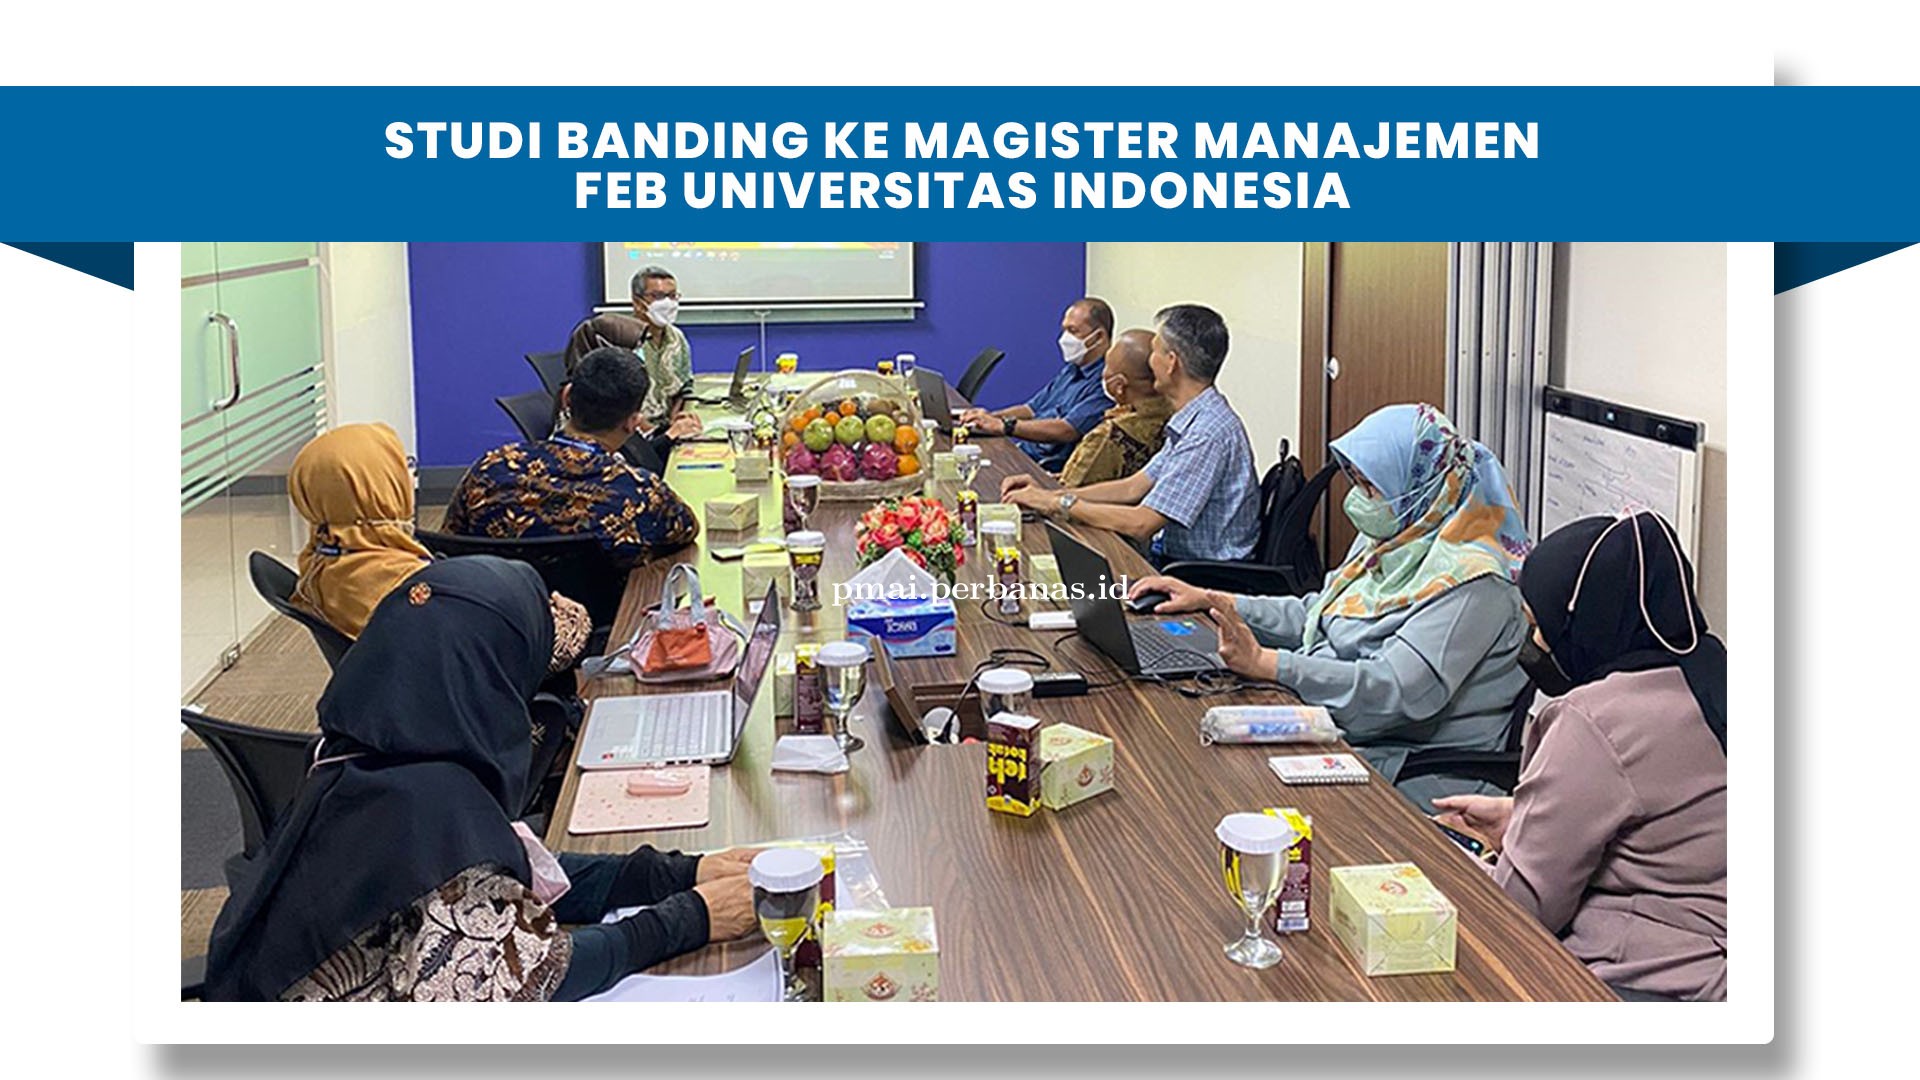 Studi Banding ke MM FEB Universitas Indonesia